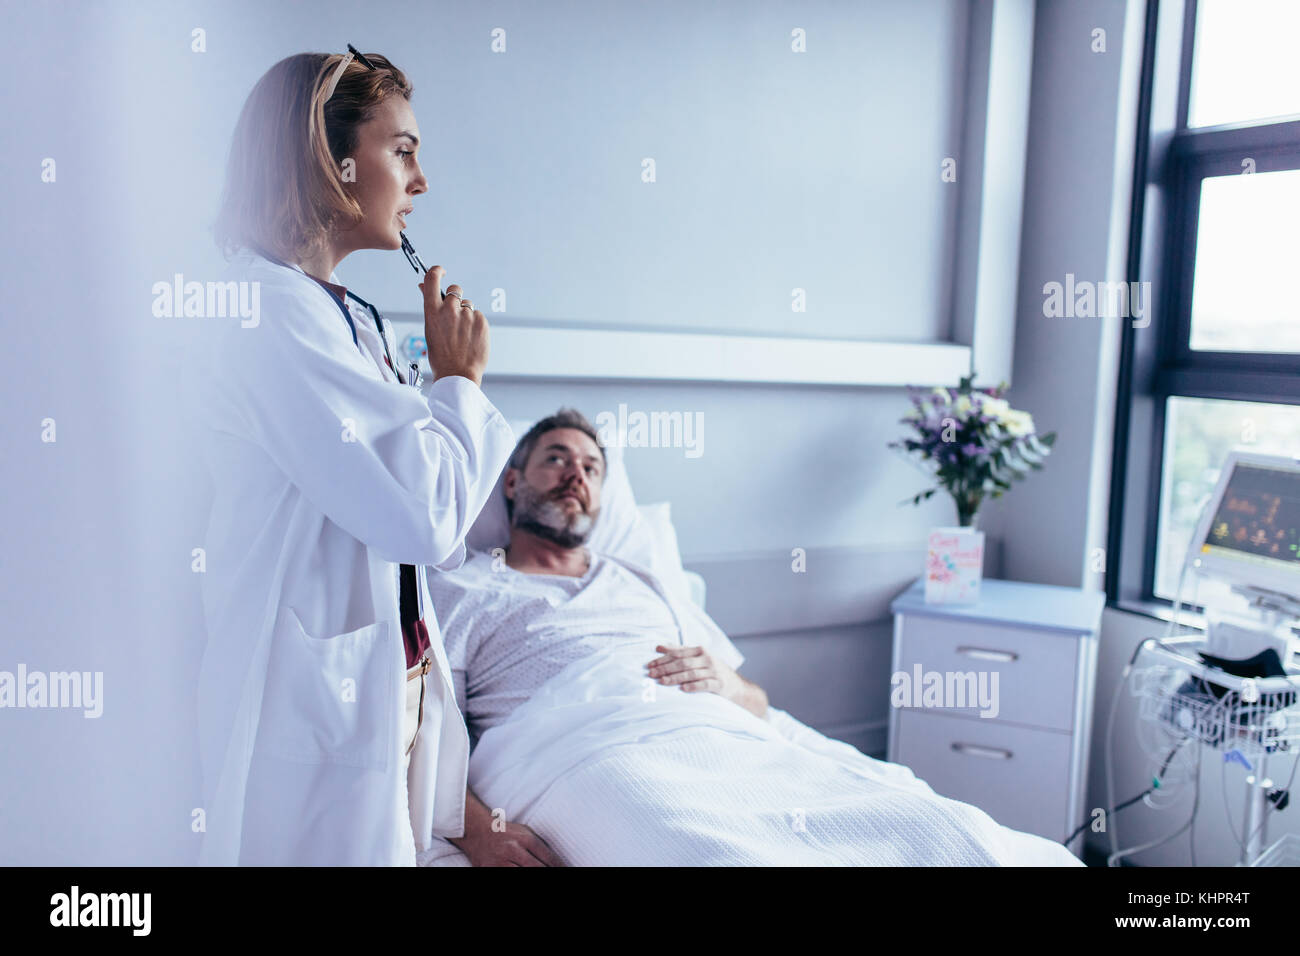 Medico nella stanza di ospedale guardando il dispositivo di monitoraggio paziente con uomo malato giacente in letto. Medico prendendo la decisione per il trattamento su ricoverato l'uomo. Foto Stock